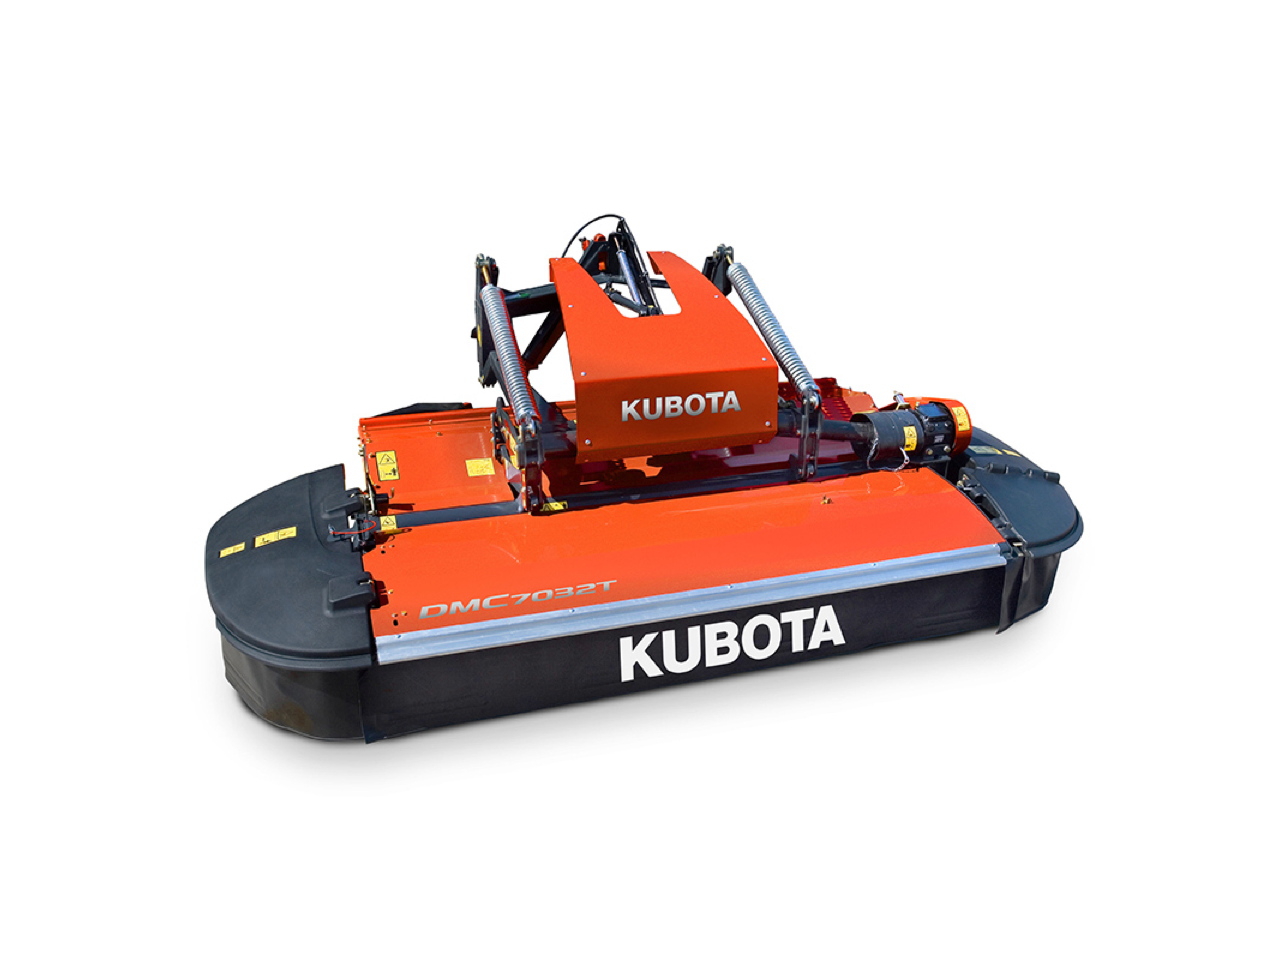 Kubota DMC 7000